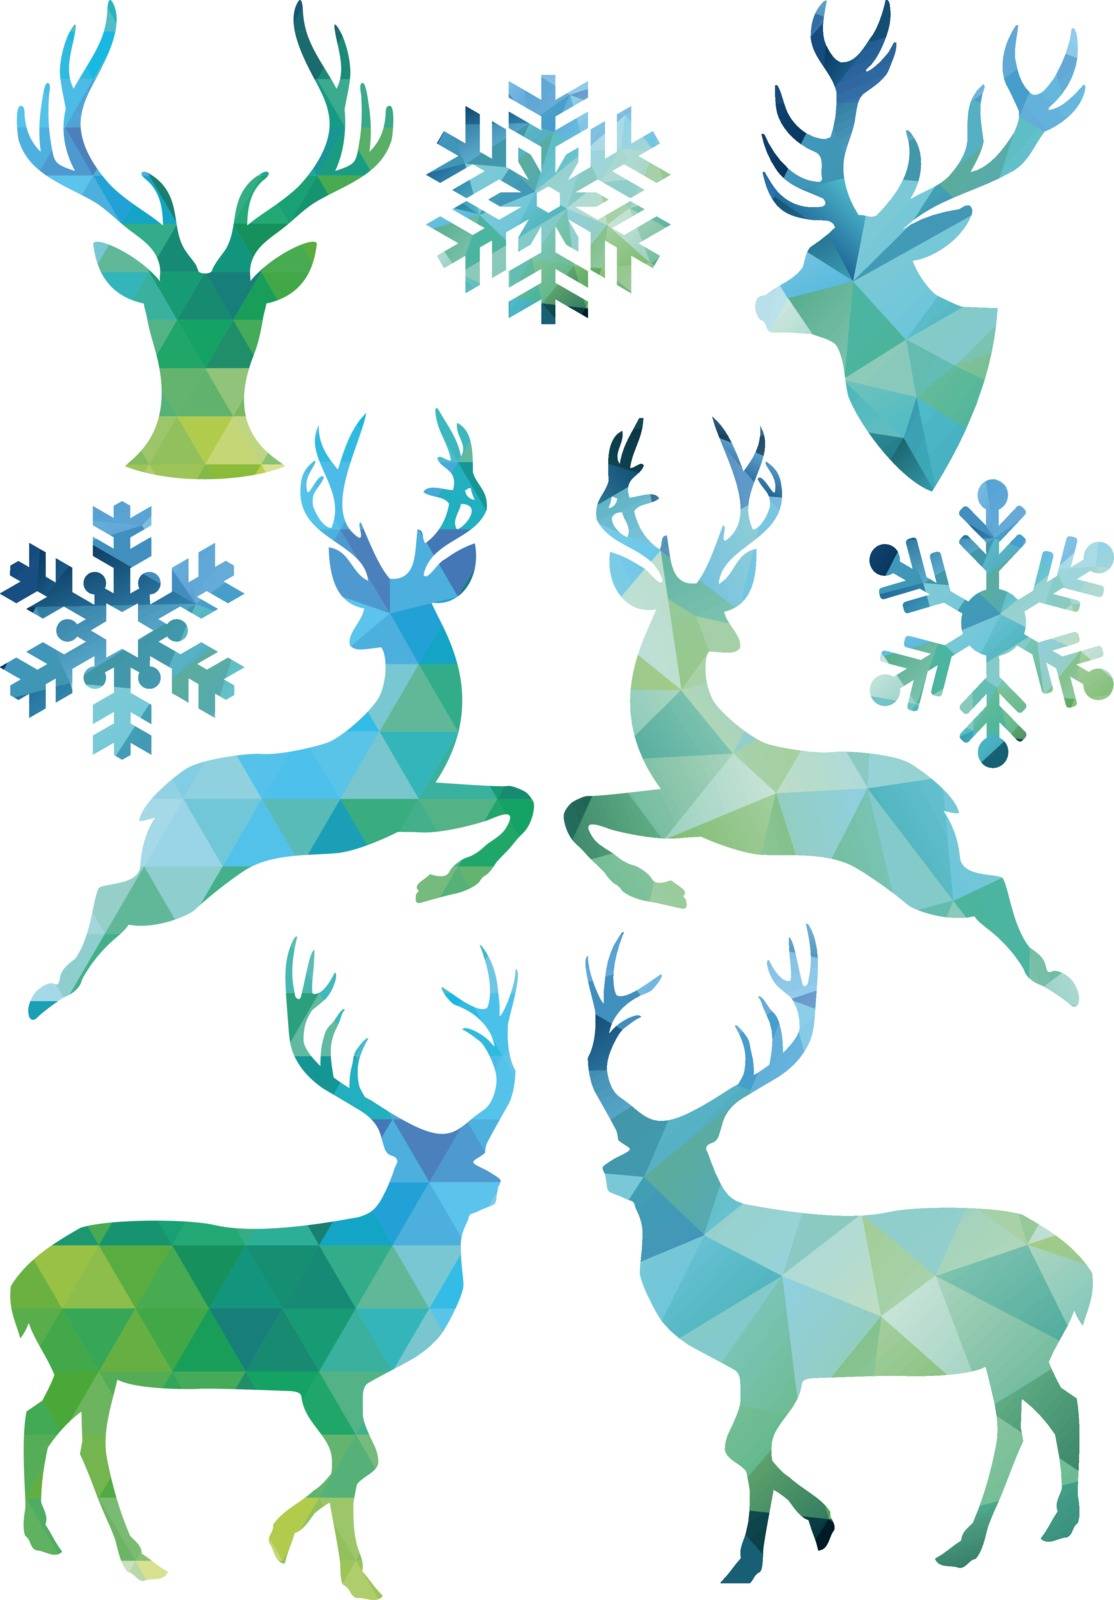 Geometric Christmas deer, vector set by dustypink